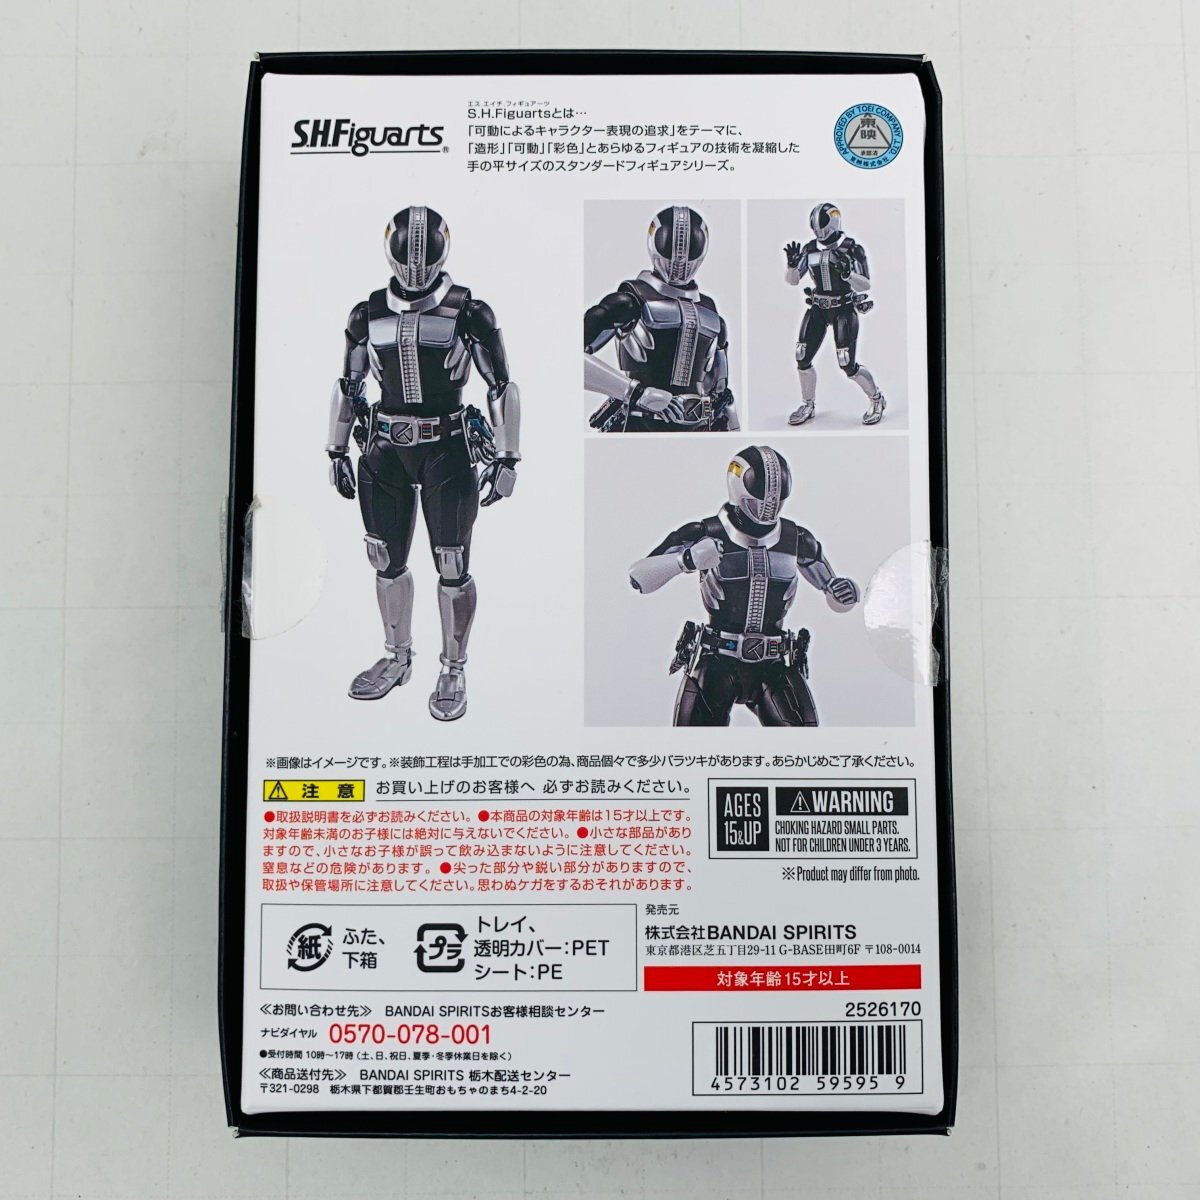  б/у товар S.H. figuarts подлинный . гравюра Kamen Rider DenO платформа 